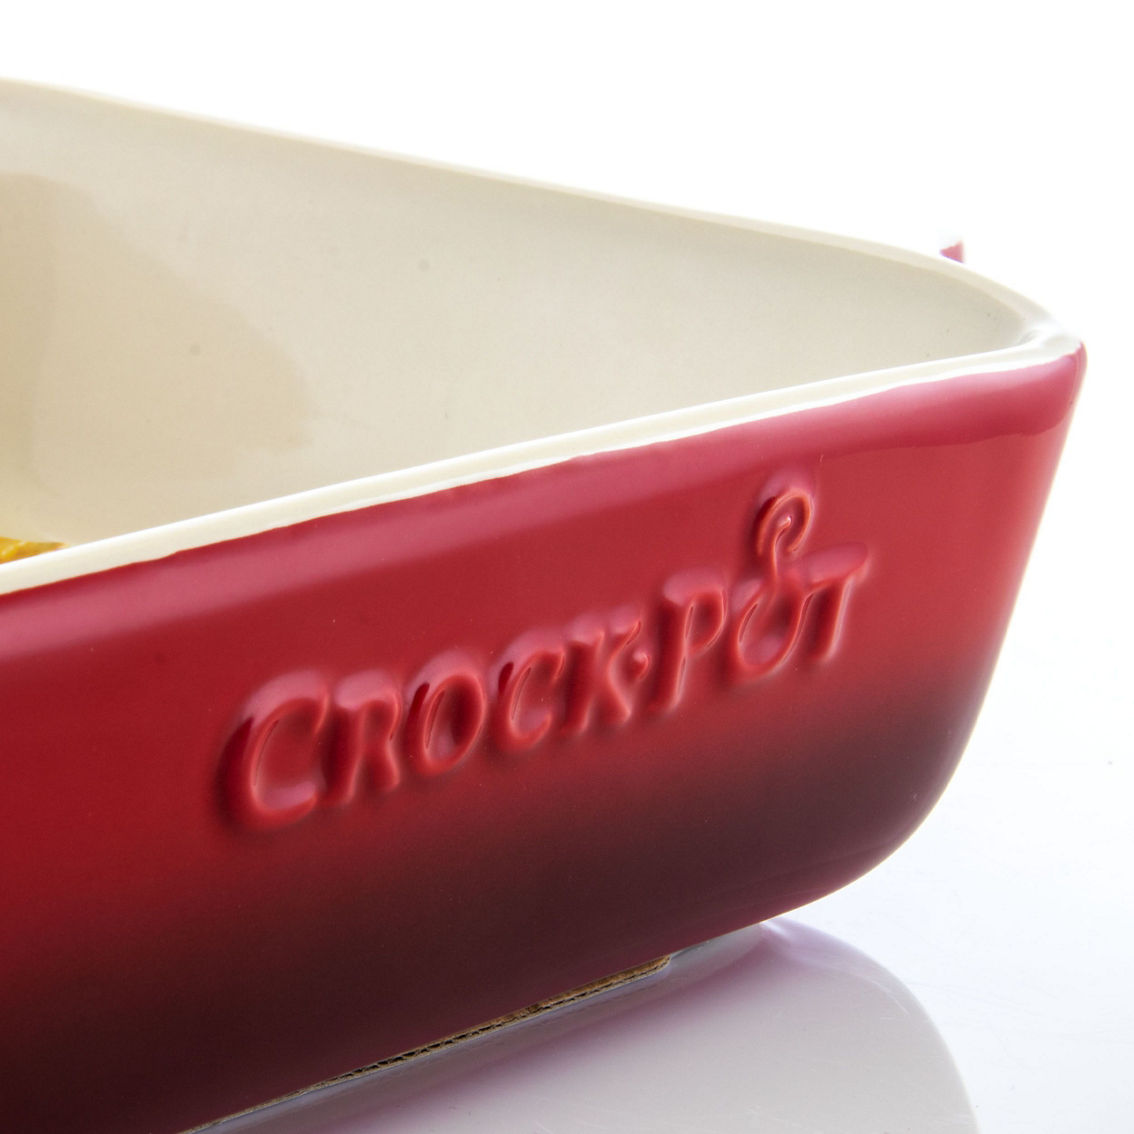 Crock Pot Artisan 5.6 Quart Stoneware Bake Pan in Red - Image 2 of 5